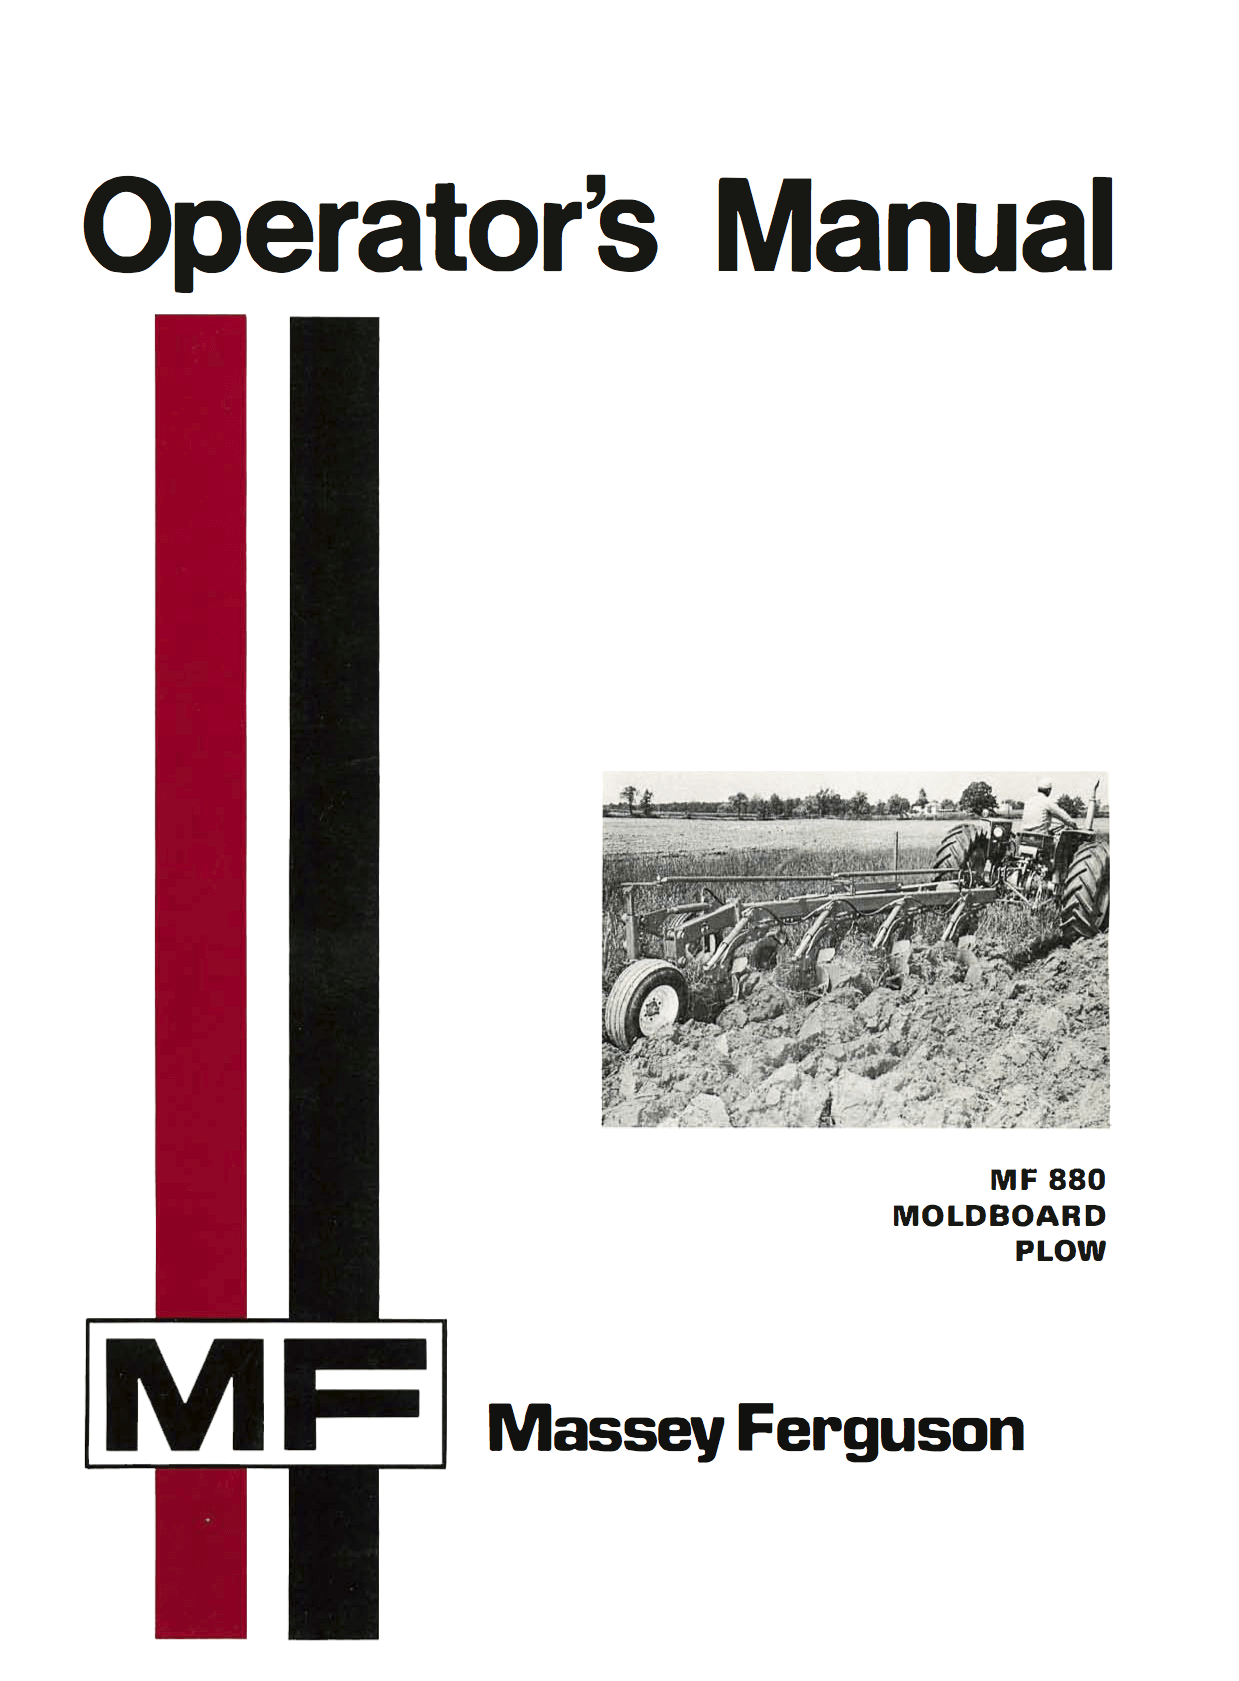 Massey Ferguson MF 880 Moldboard Plow Operator's Manual